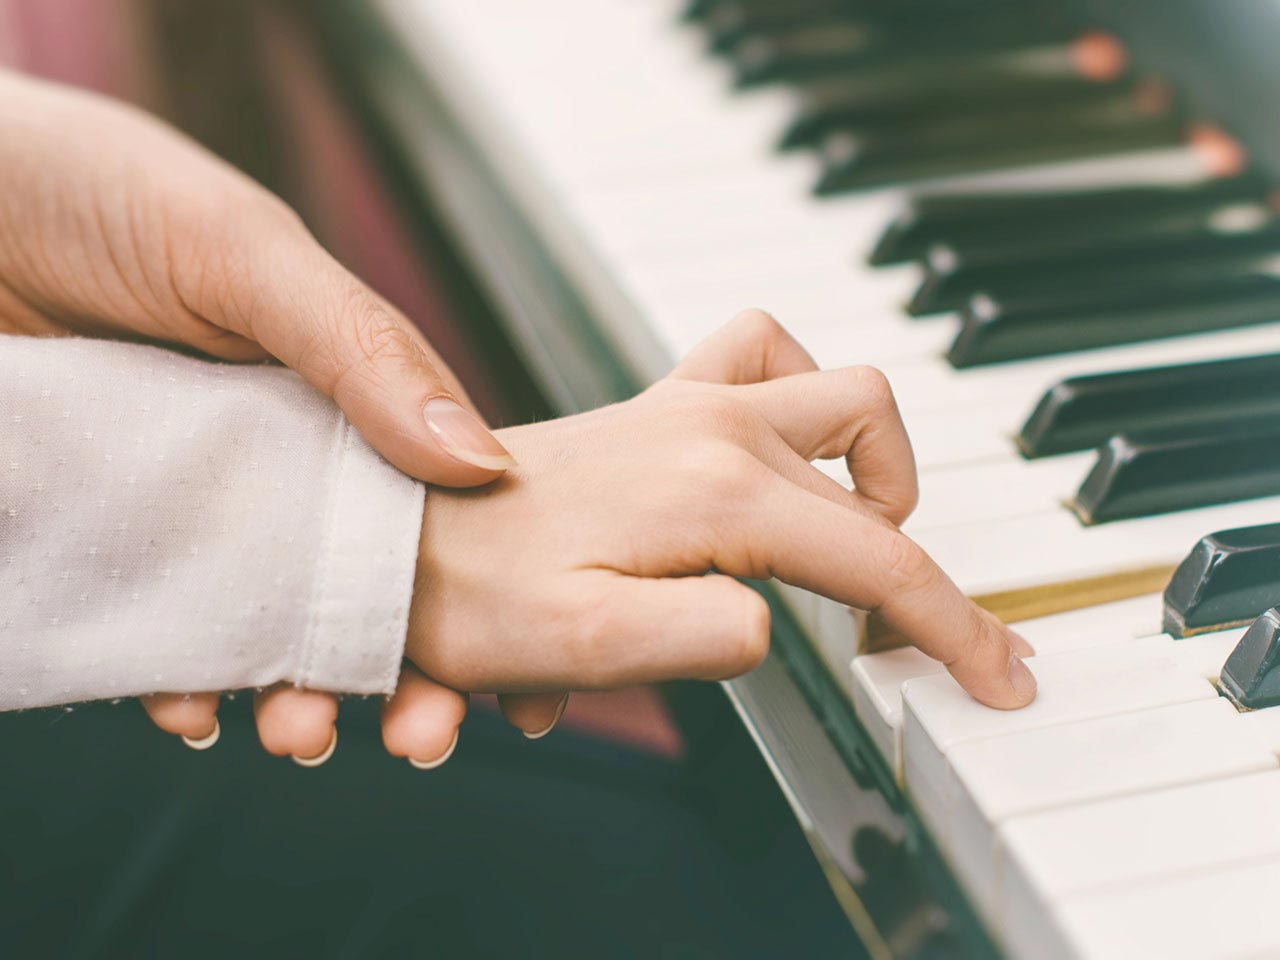 Piano teacher's hands on piano keys